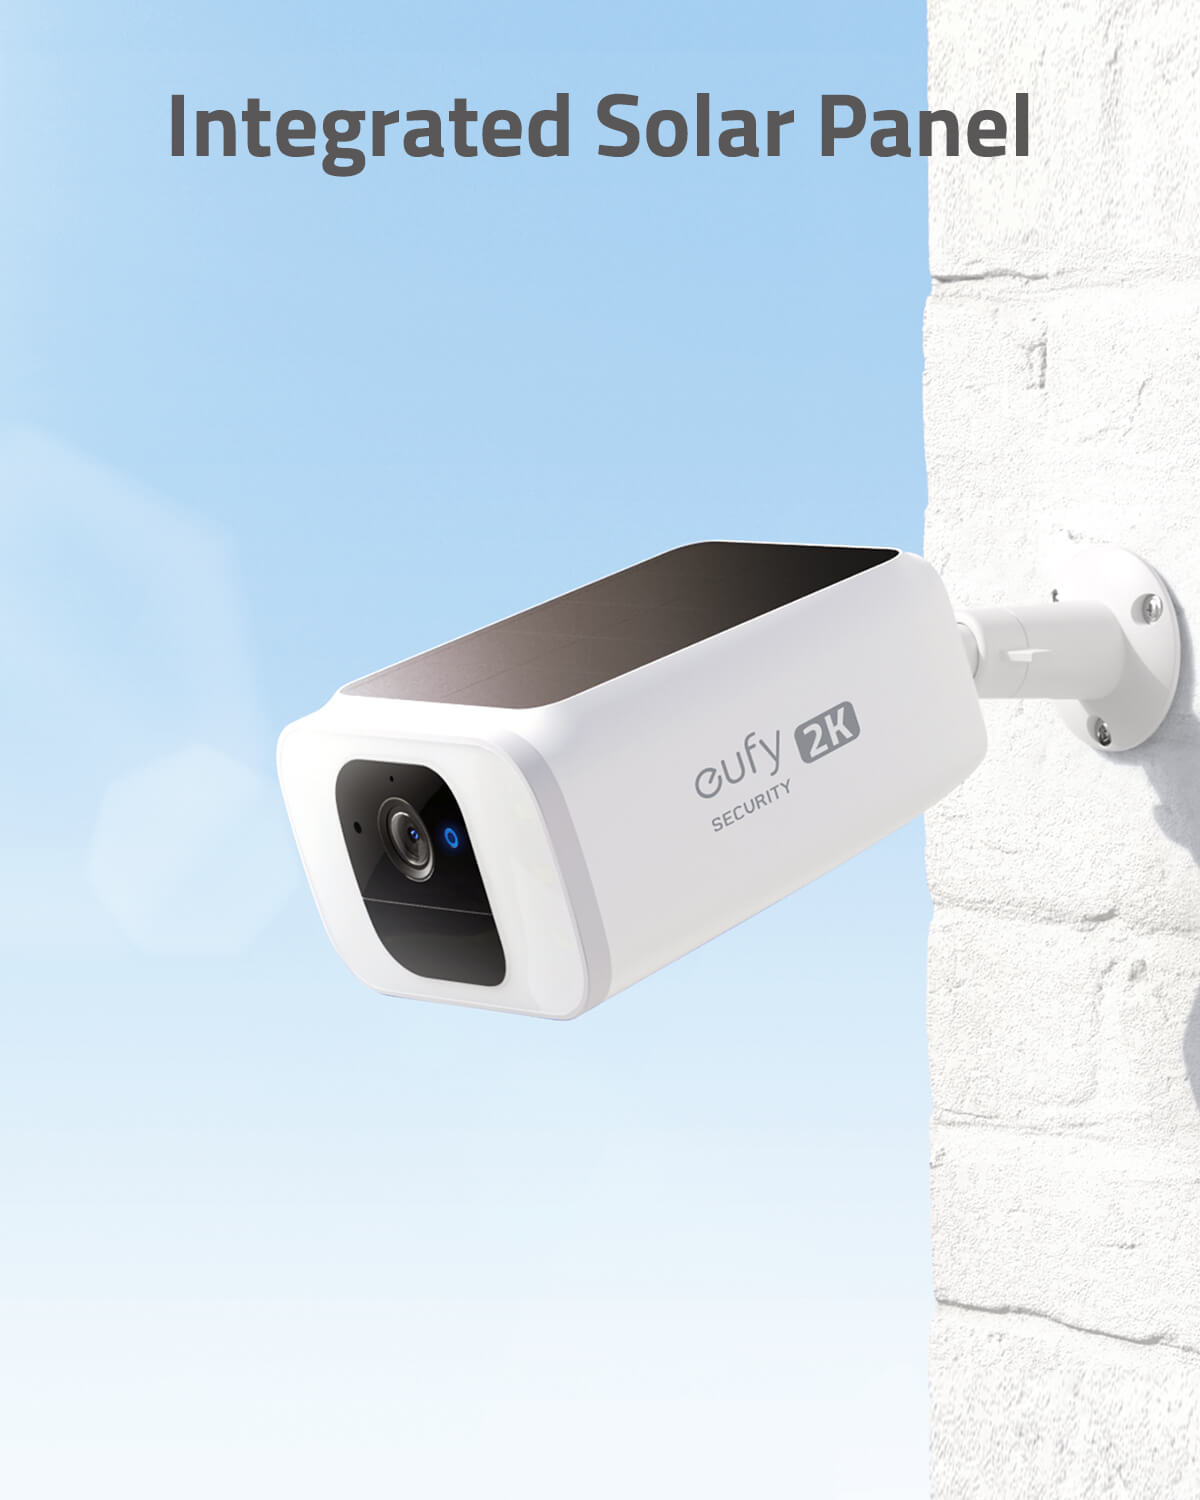 SoloCam C120 2K Security Camera